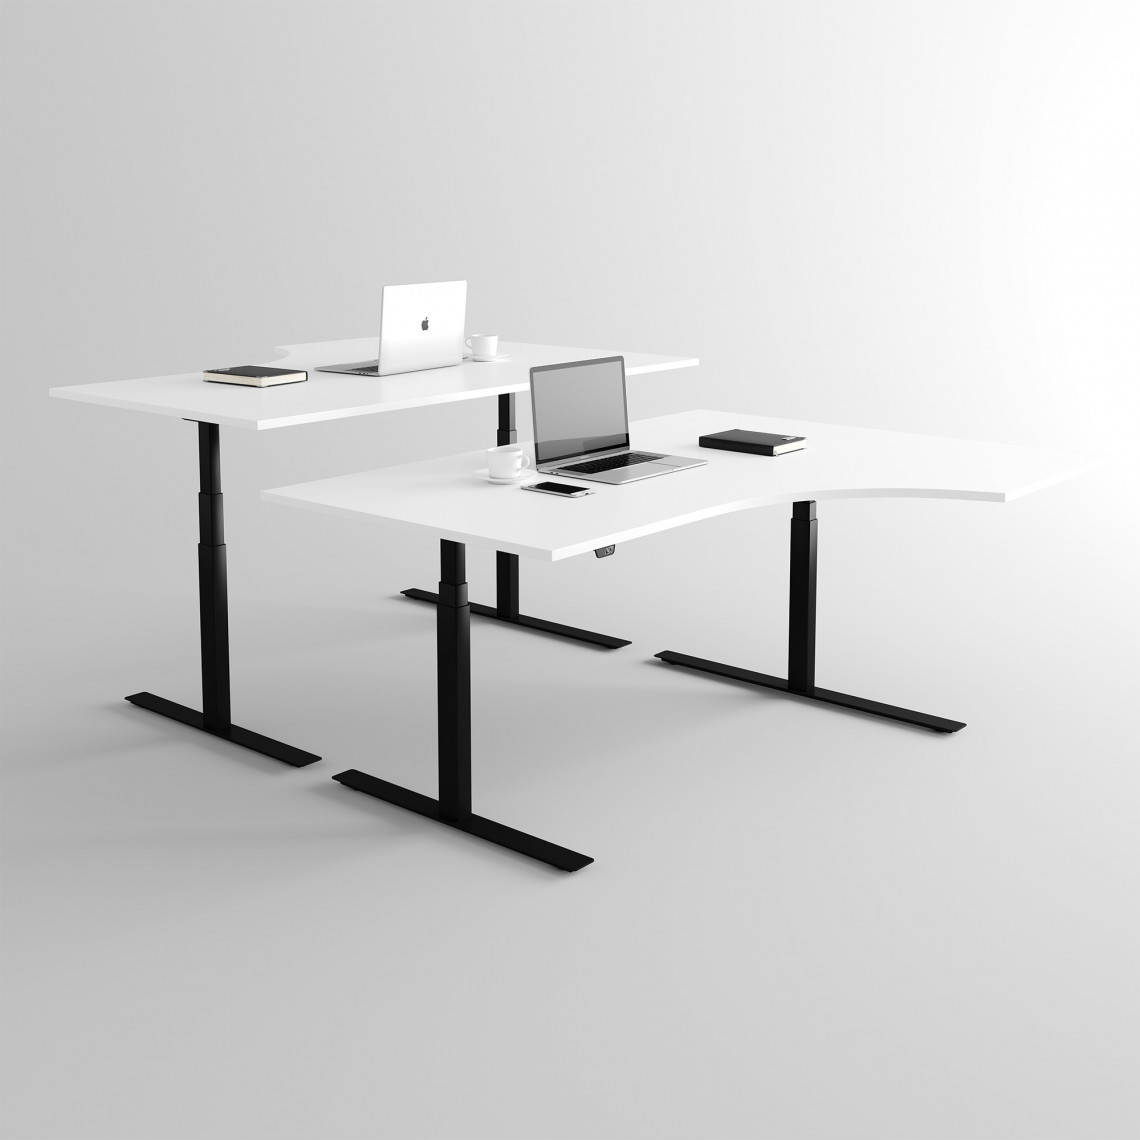 Hohenverstellbarer Schreibtisch In Eckform Schwarz Weiss Premium